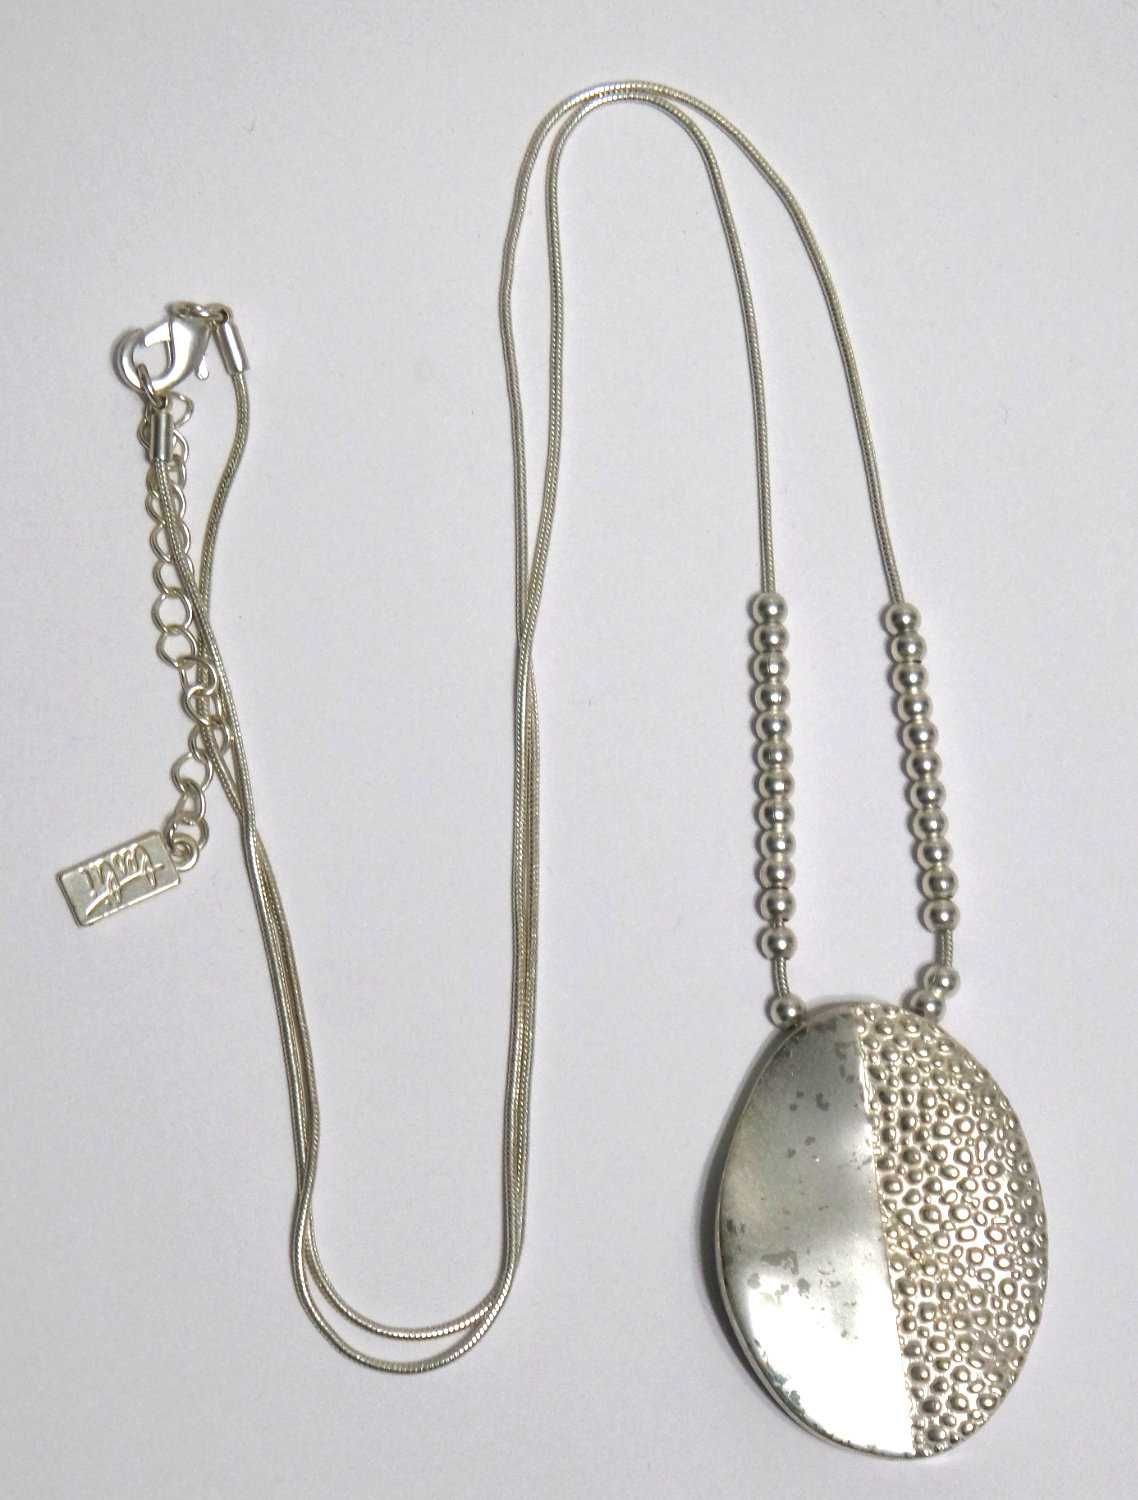 Długi naszyjnik metalowy w kolorze srebrnym